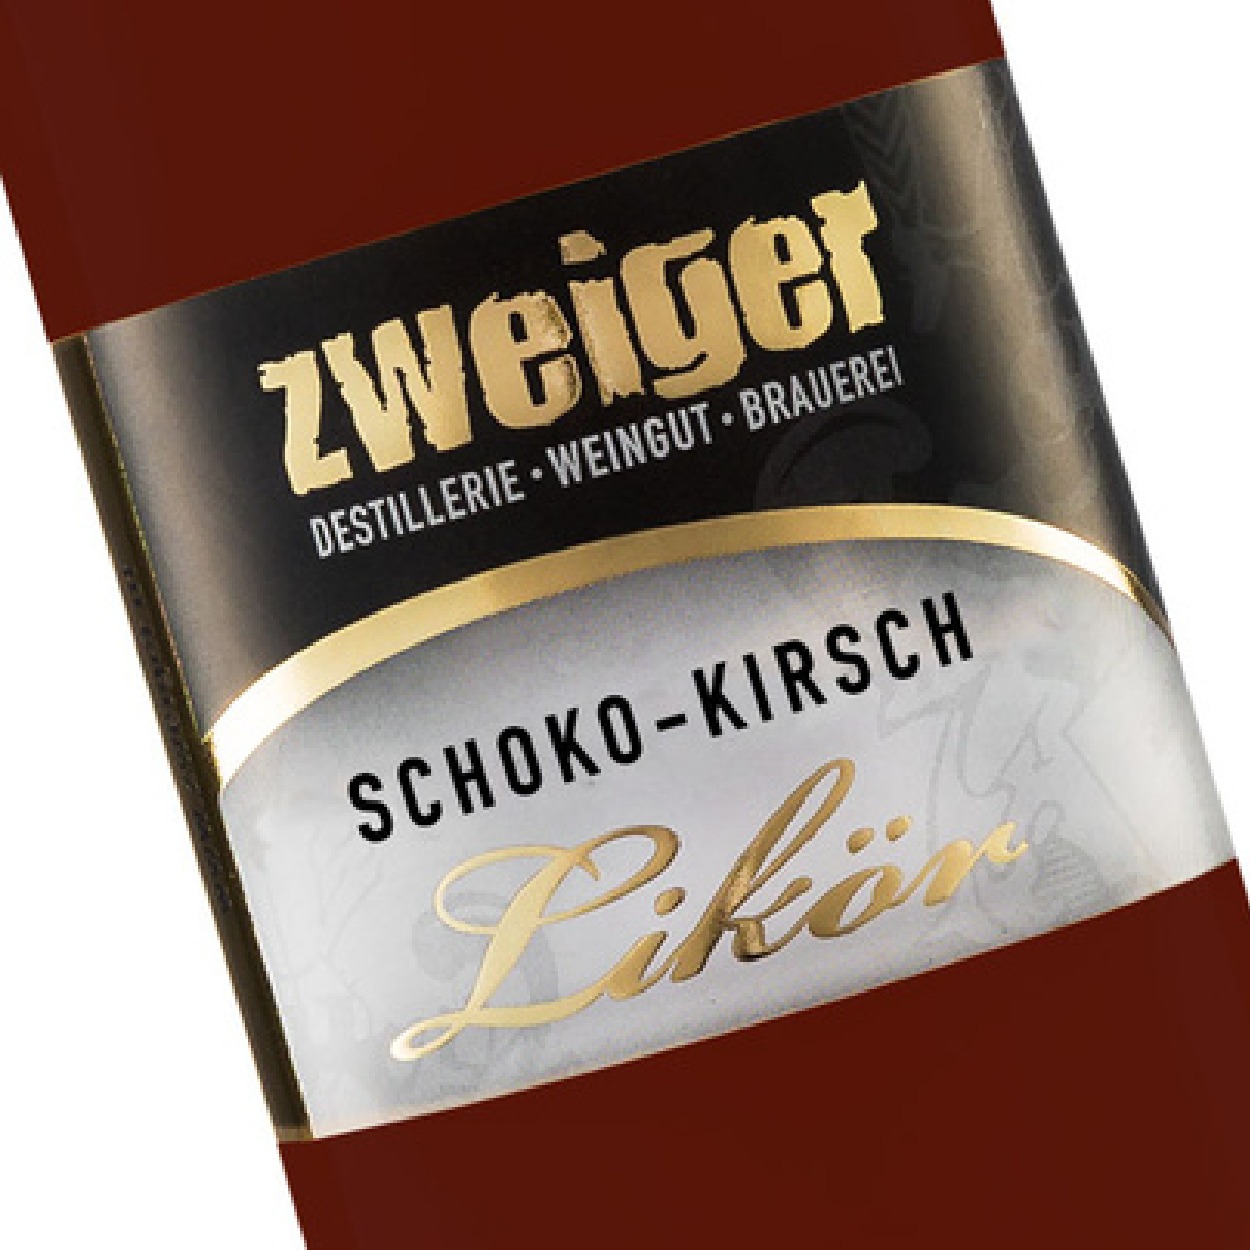 Schoko-Kirsch Cremelikör Zweiger Destillerie